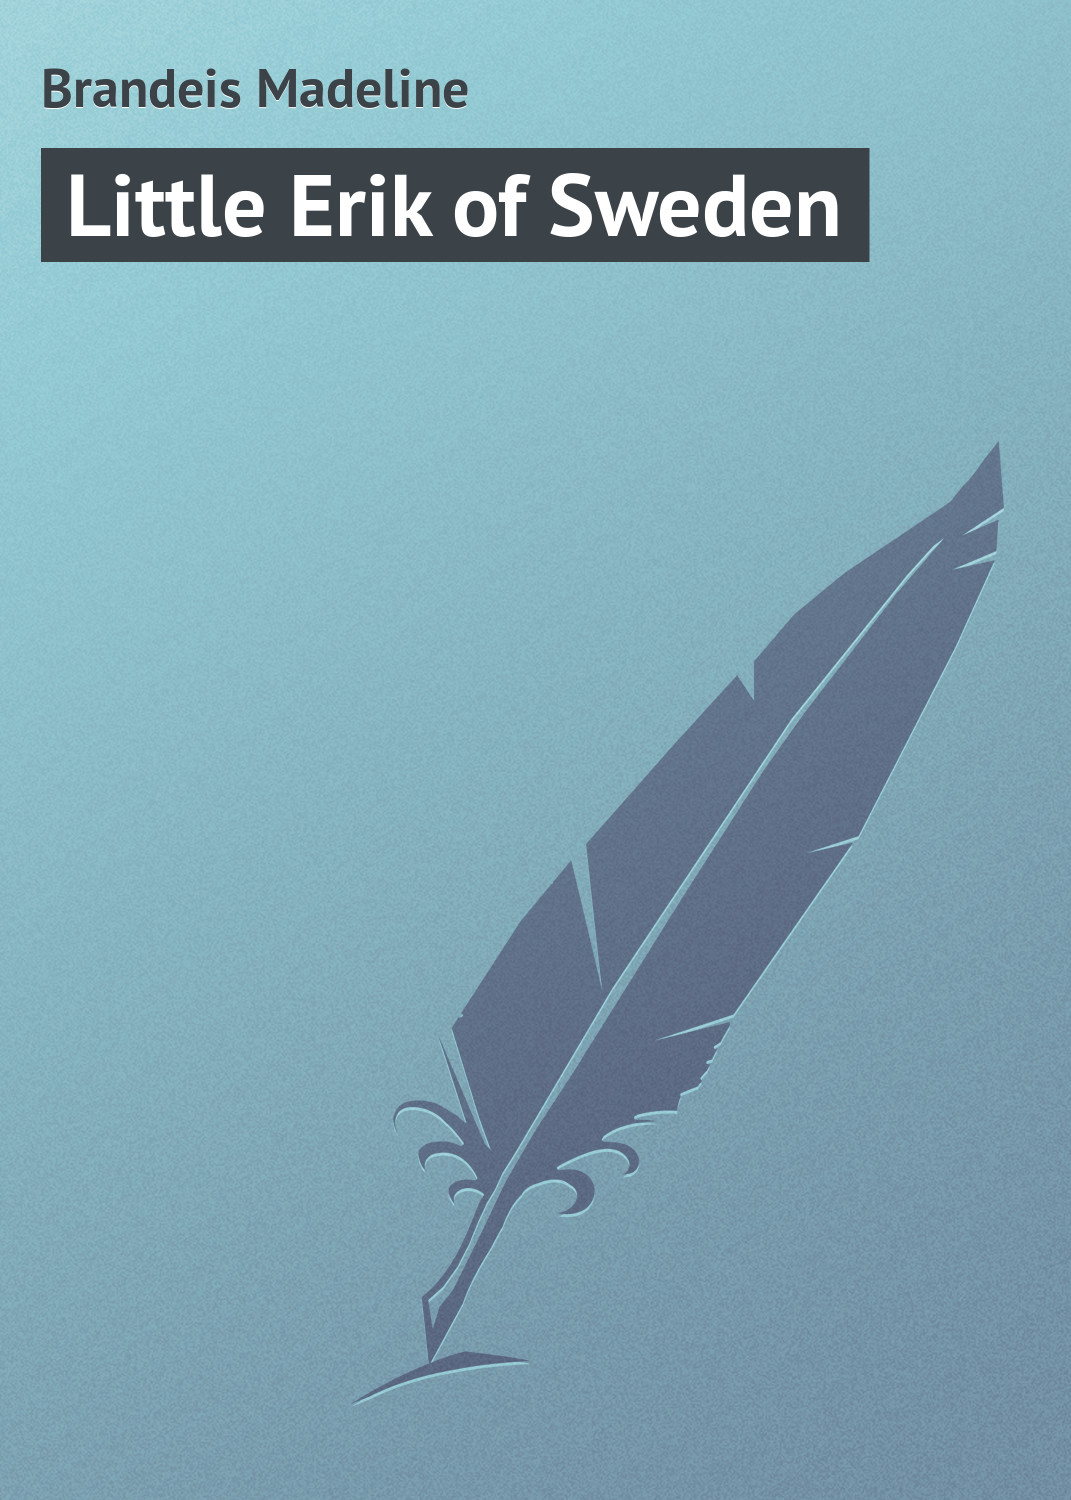 Книга Little Erik of Sweden из серии , созданная Madeline Brandeis, может относится к жанру Зарубежная классика, Зарубежные детские книги. Стоимость электронной книги Little Erik of Sweden с идентификатором 23166795 составляет 5.99 руб.